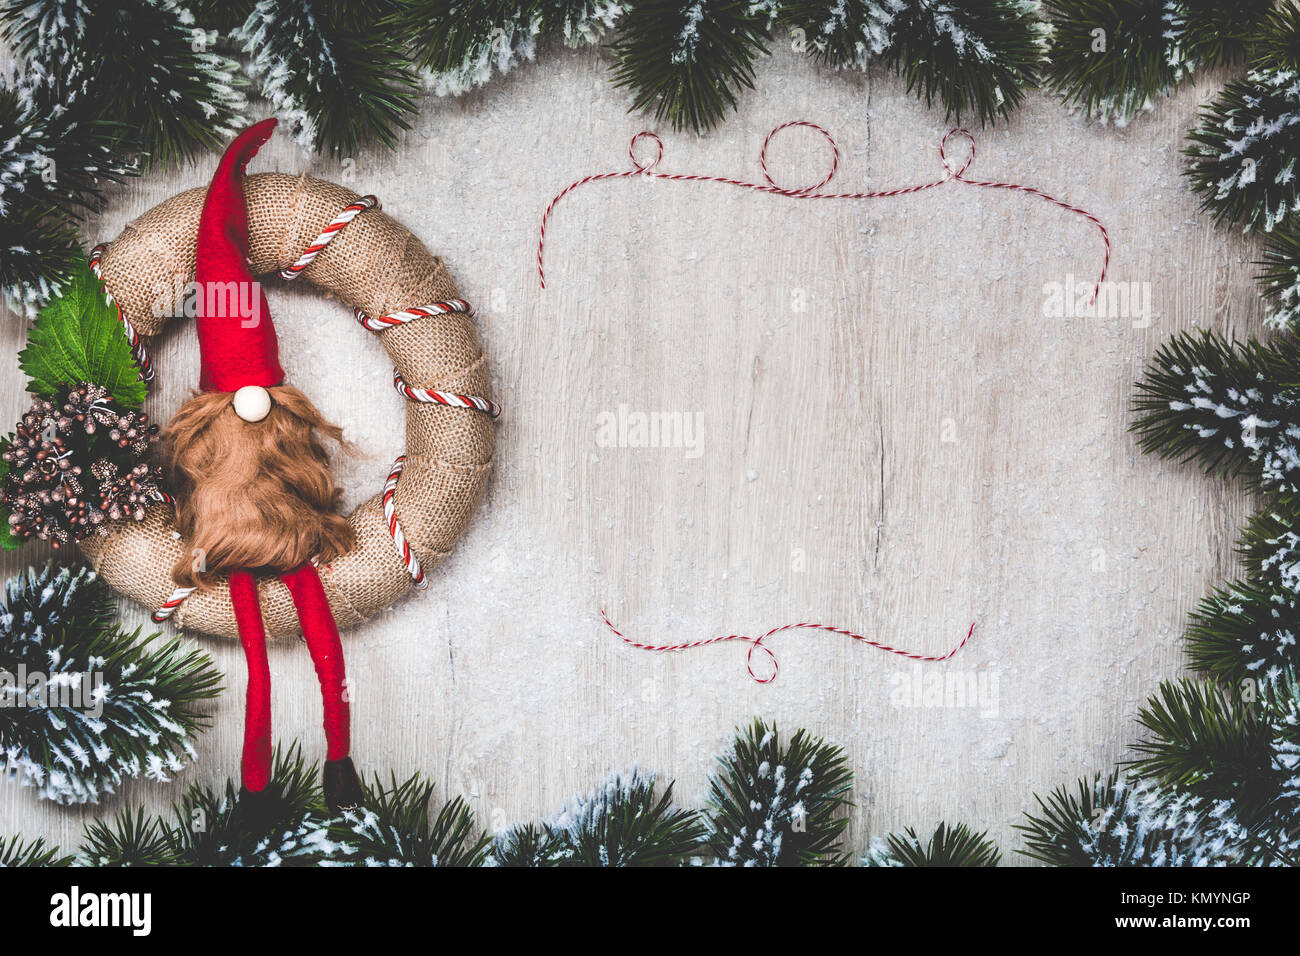 Weihnachten Grußkarte. Weihnachten Hintergrund mit Schnee Tannenbaum und Nordic Weihnachten Kranz handgefertigt. Sicht von oben mit Platz für ihre Grüße. Stockfoto